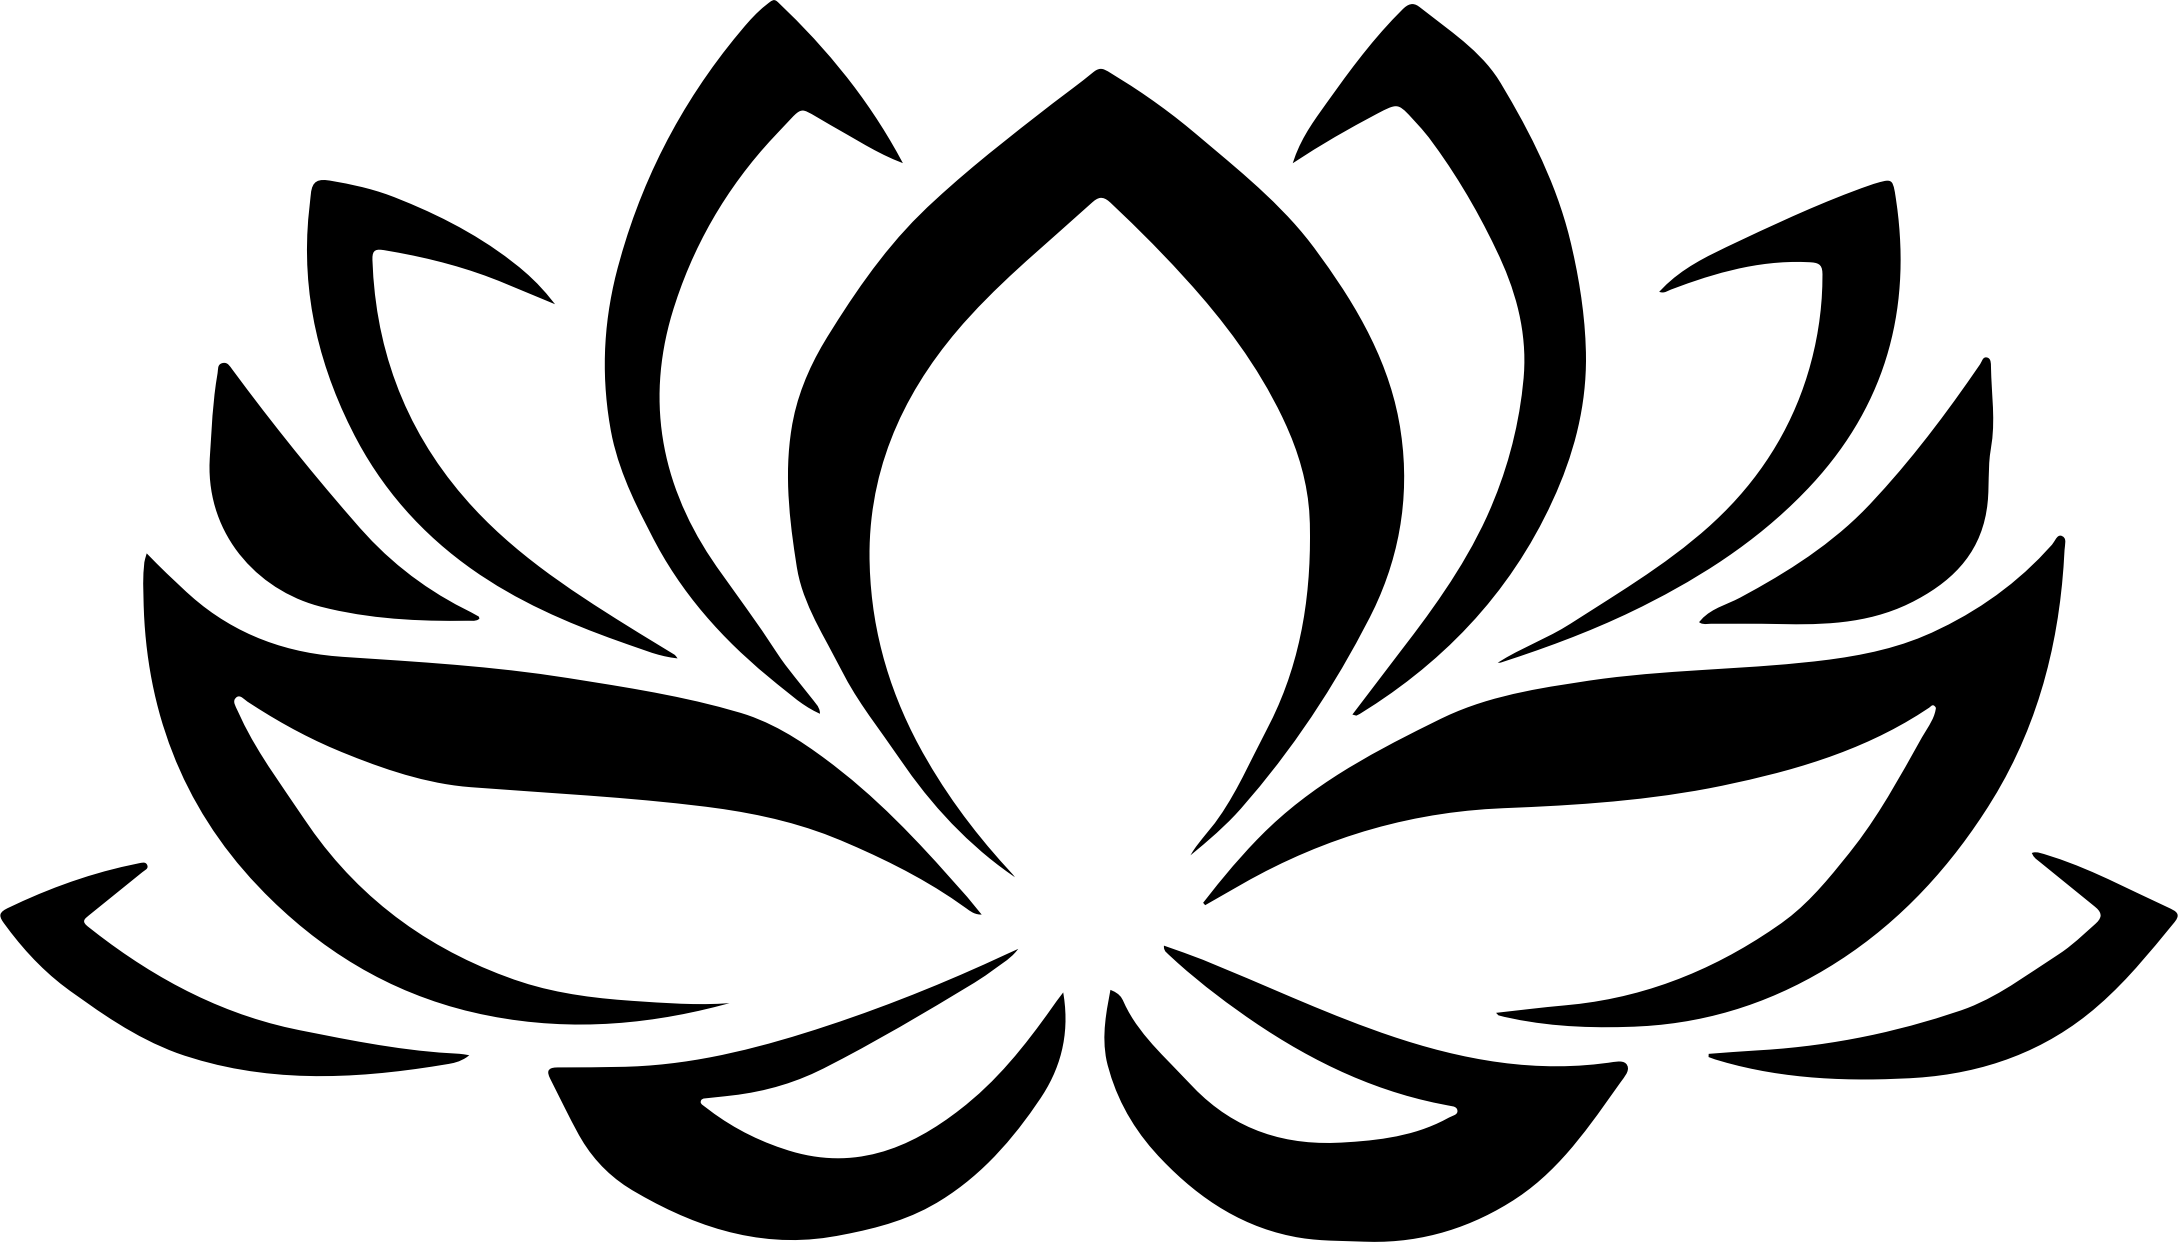 White Lotus Flower Logo - Lotus Flower Black And White PNG Transparent Lotus Flower Black And ...